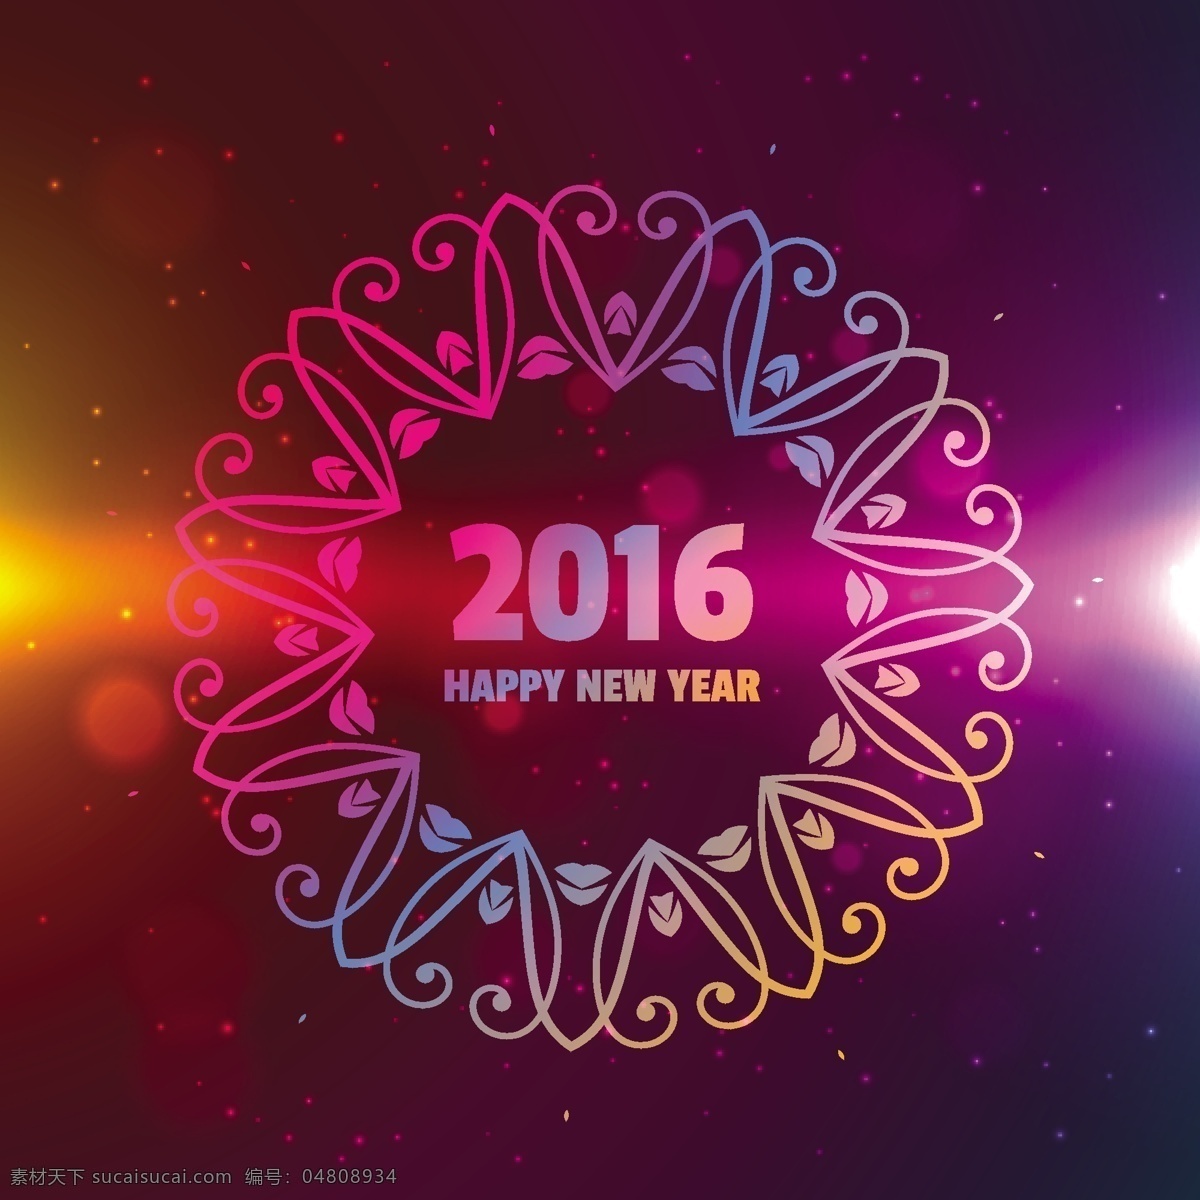 2016 新年 快乐 背景 框架 小册子 海报 花卉 卡片 装饰 欢乐新年 光 新的一年 冬 花卉背景 壁纸 漩涡 庆祝 新 活动 节日 红色